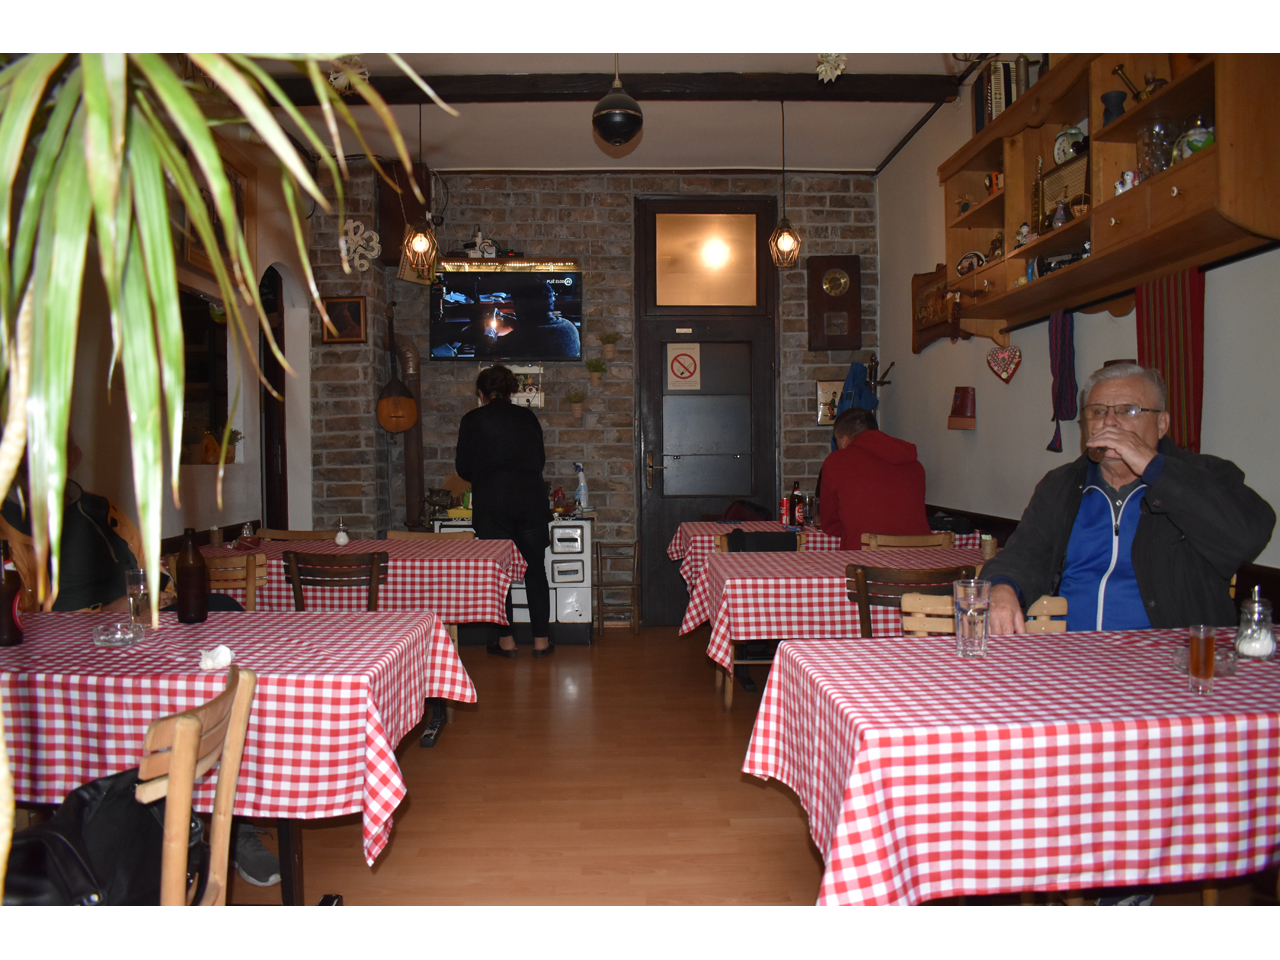 KAFANA BEZ IMENA Restorani Beograd - Slika 7